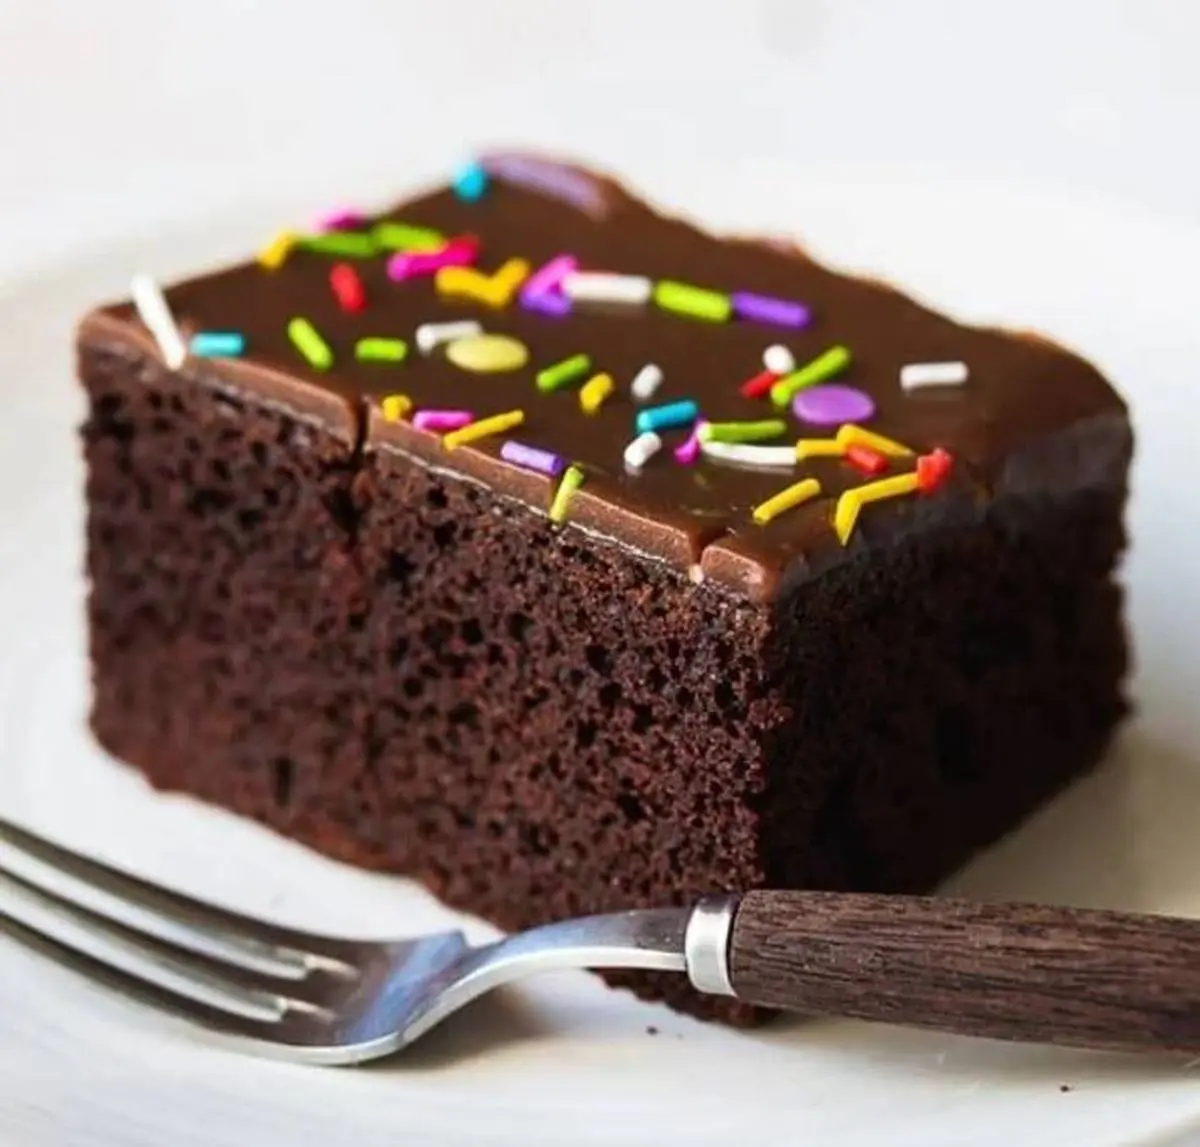  کیک شکلاتی به روش قنادی ها درست کن | طرز تهیه کیک شکلاتی